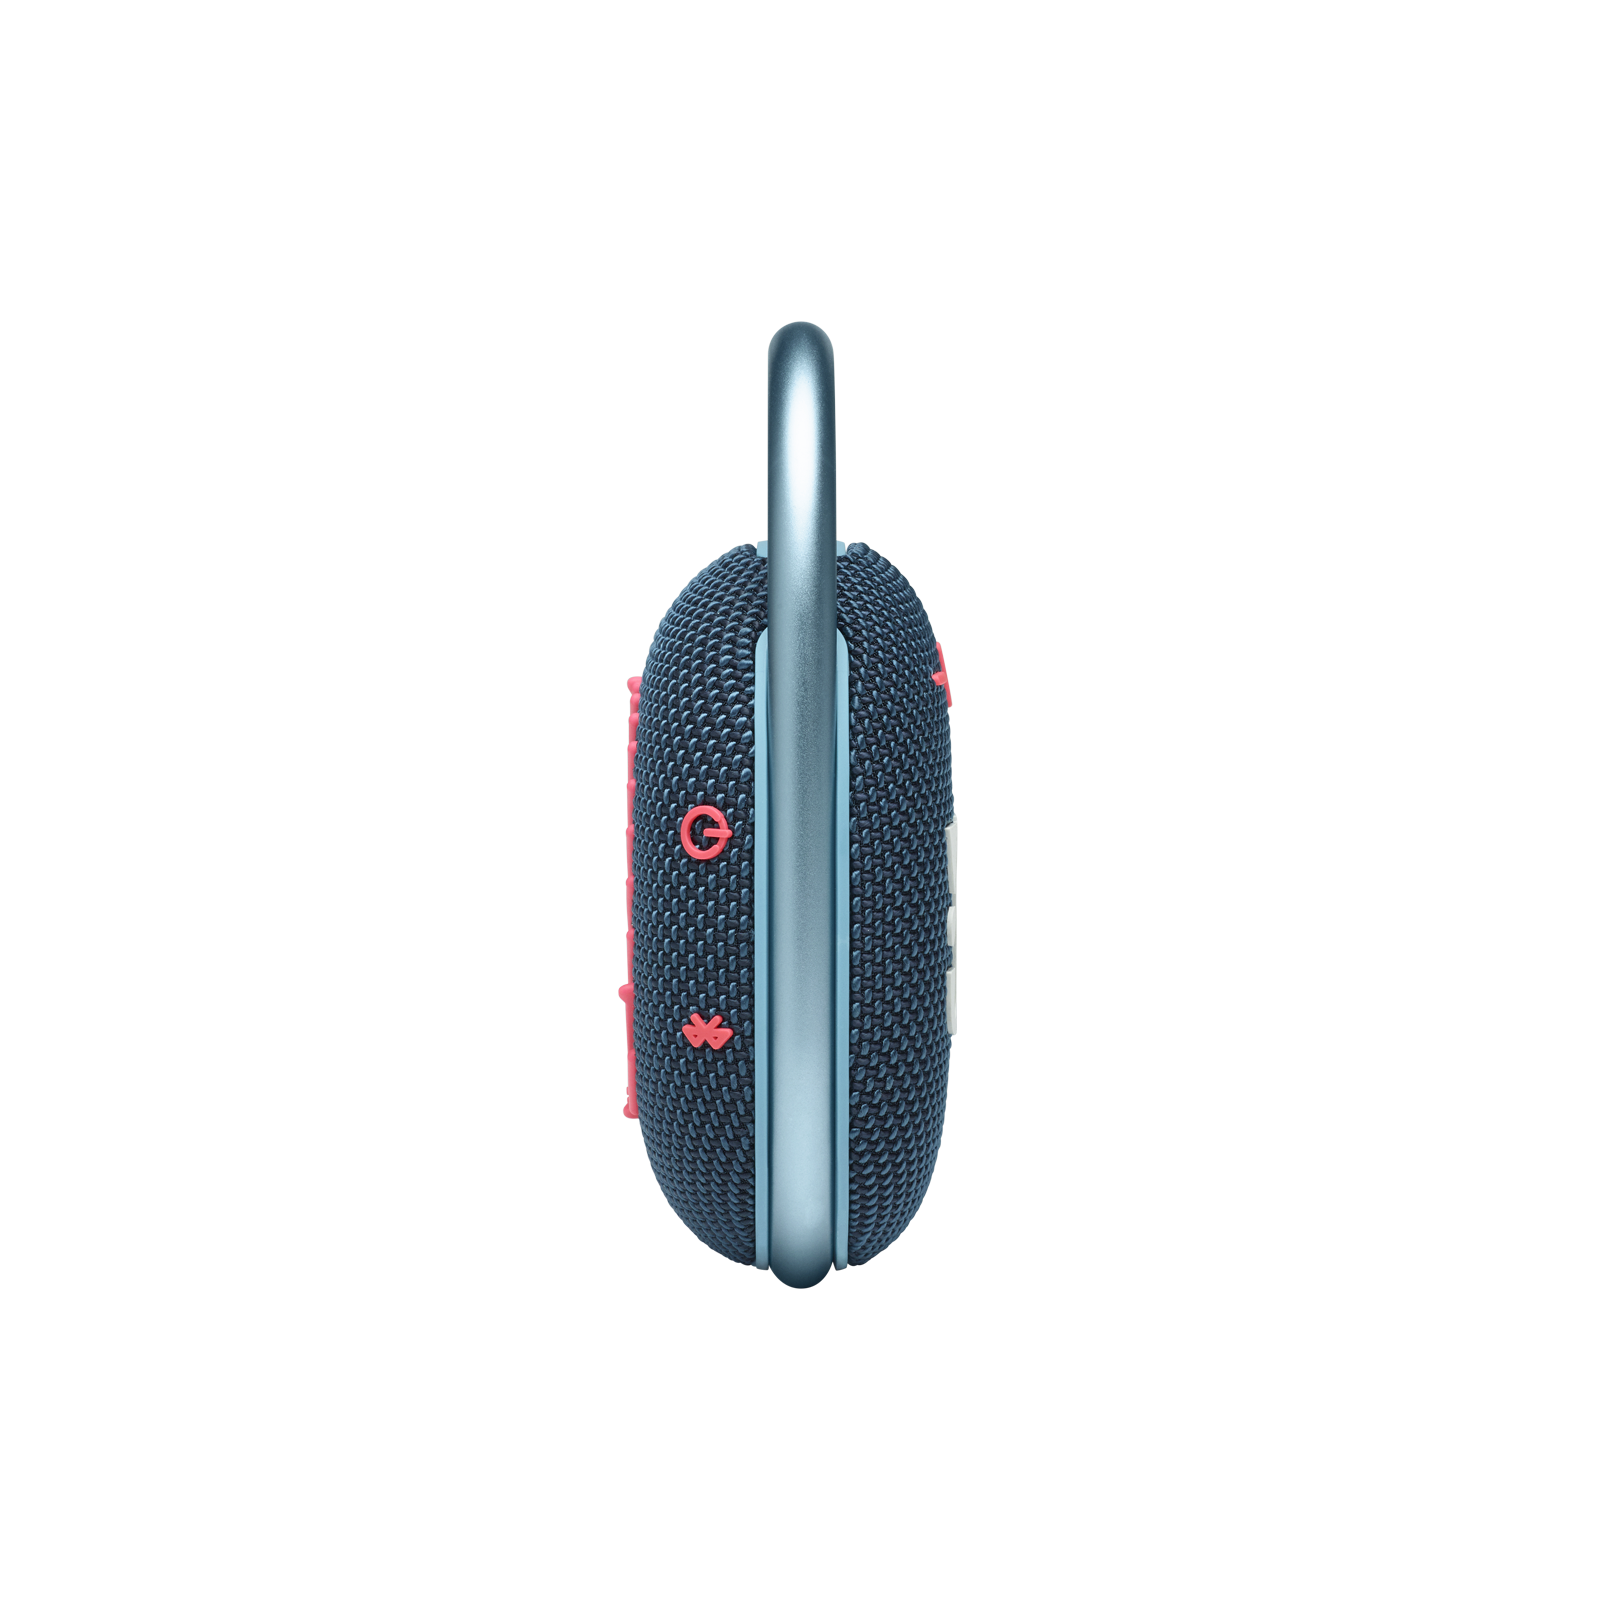 JBL Clip 4 - Blue / Pink - Ultra-portable Waterproof Speaker - Left